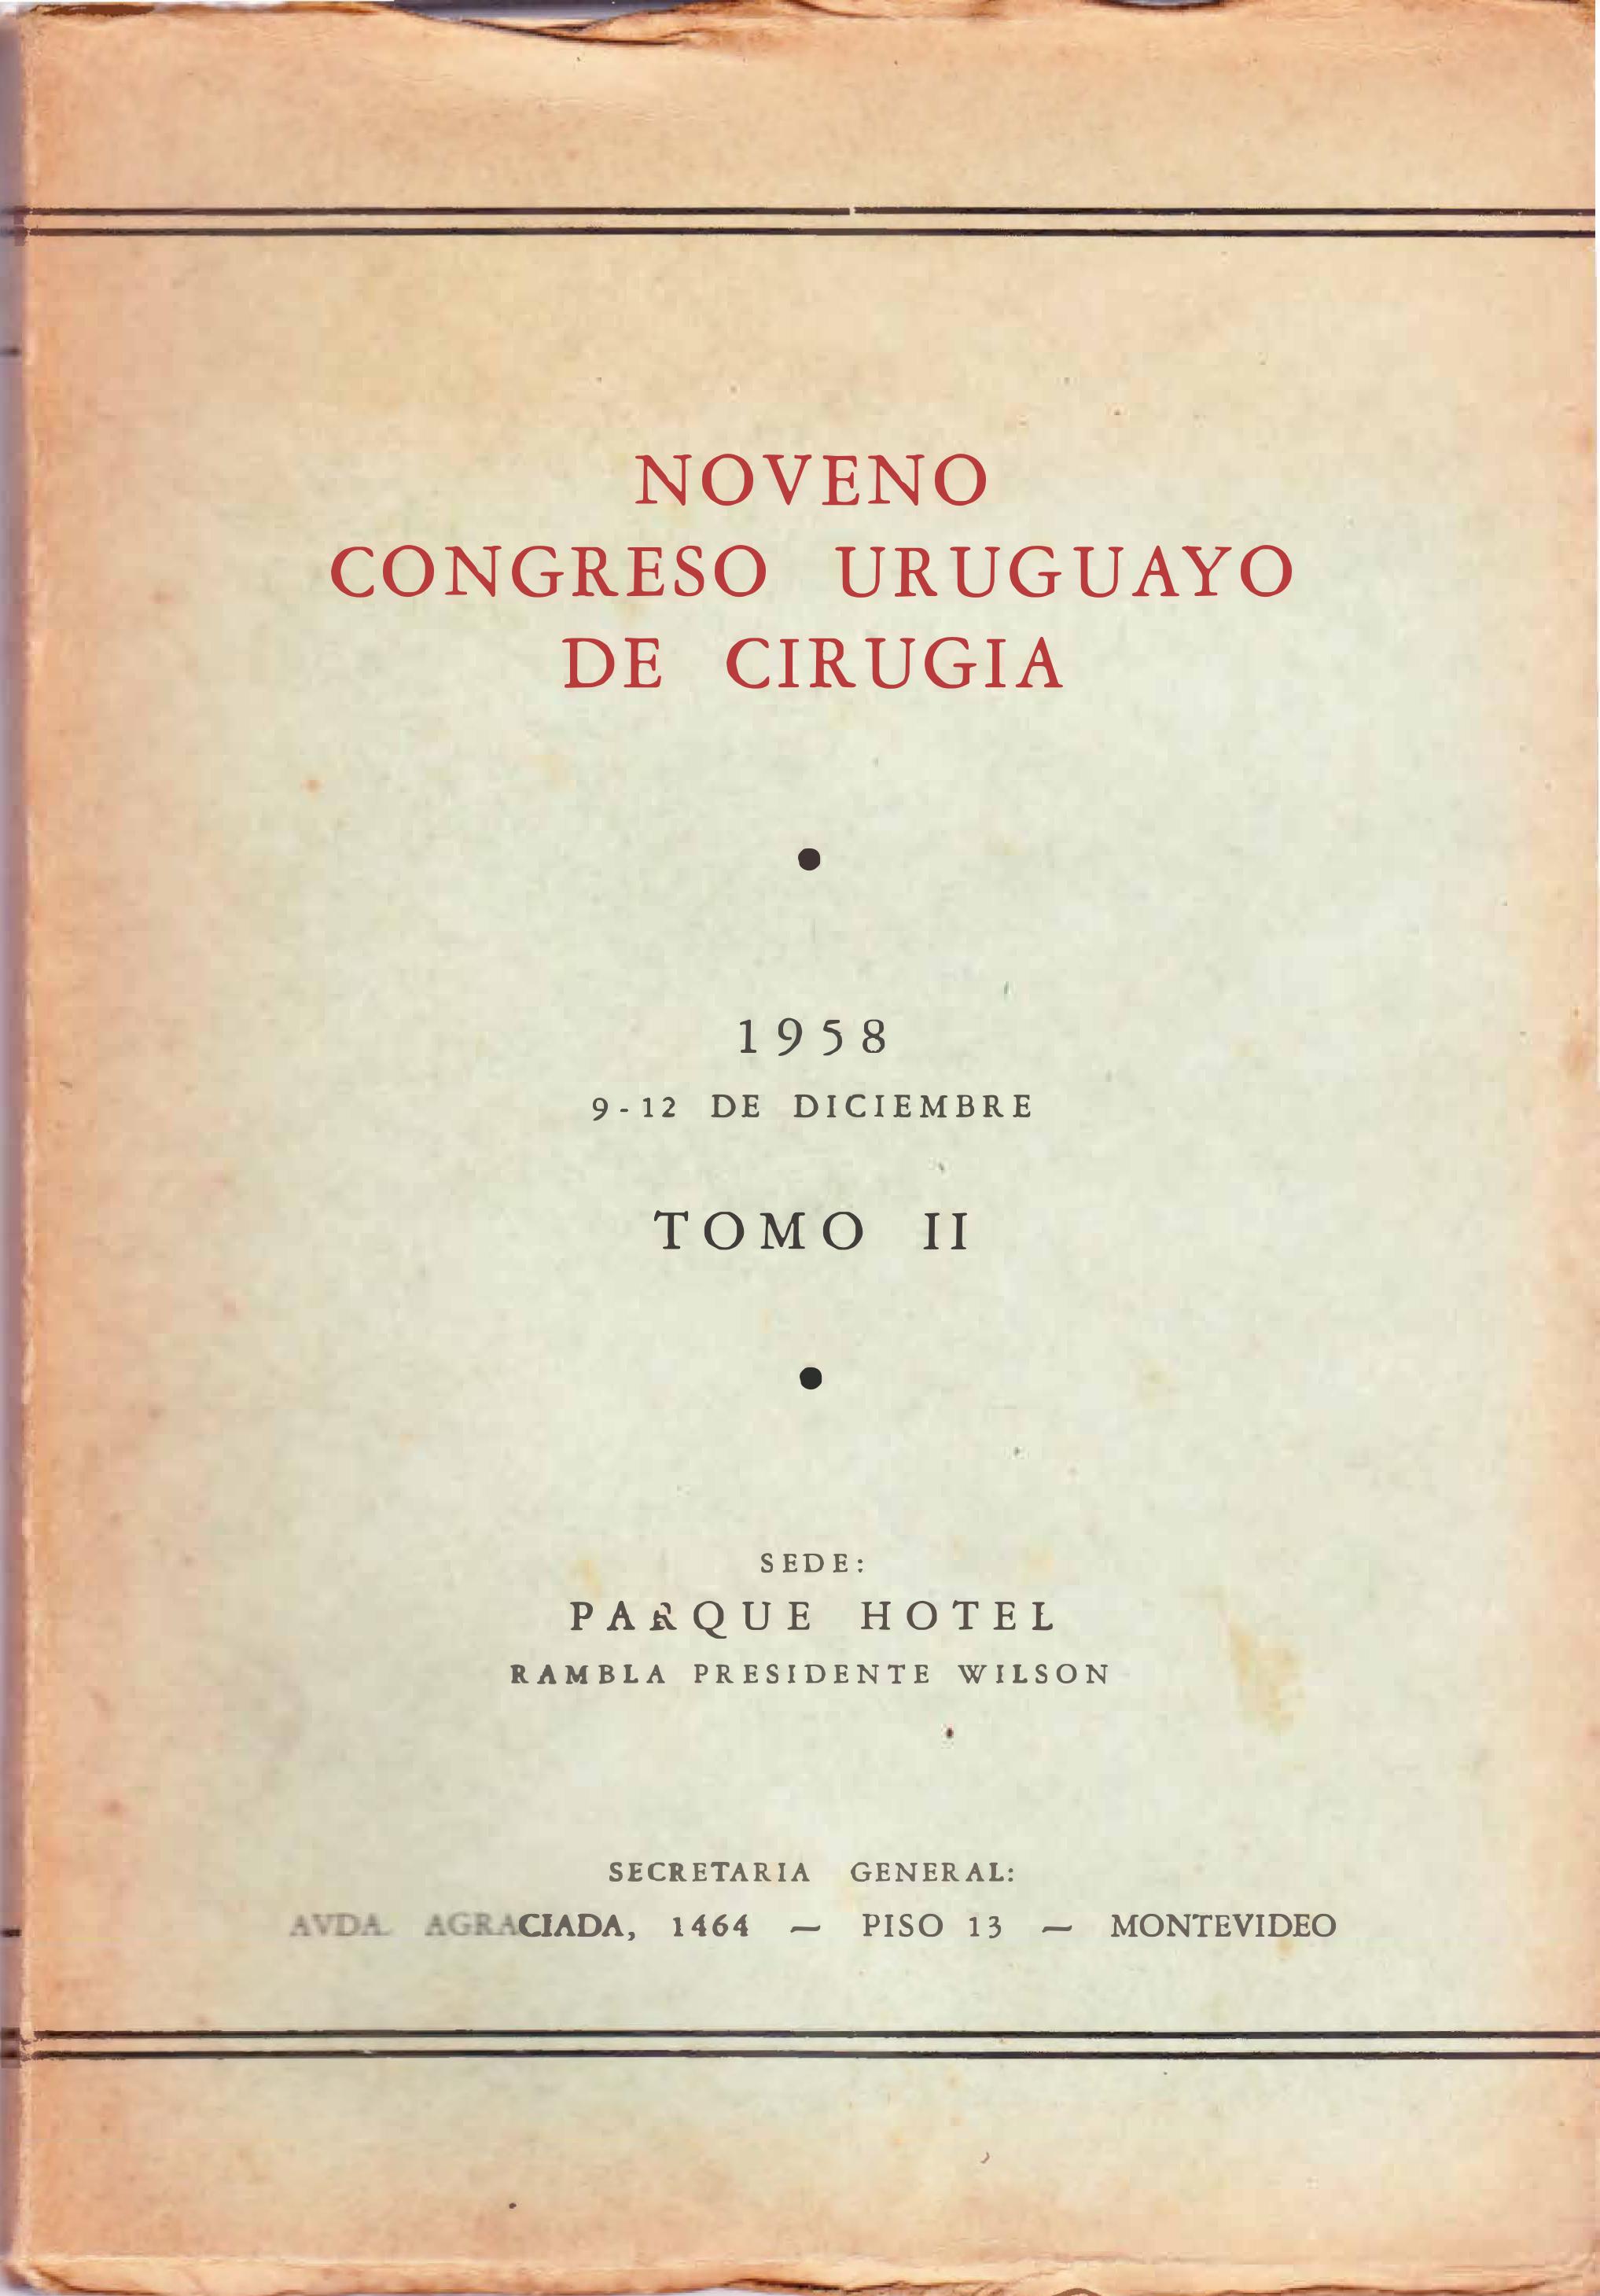 					View No. 2 (1958): Congresos Uruguayos de Cirugía 
				